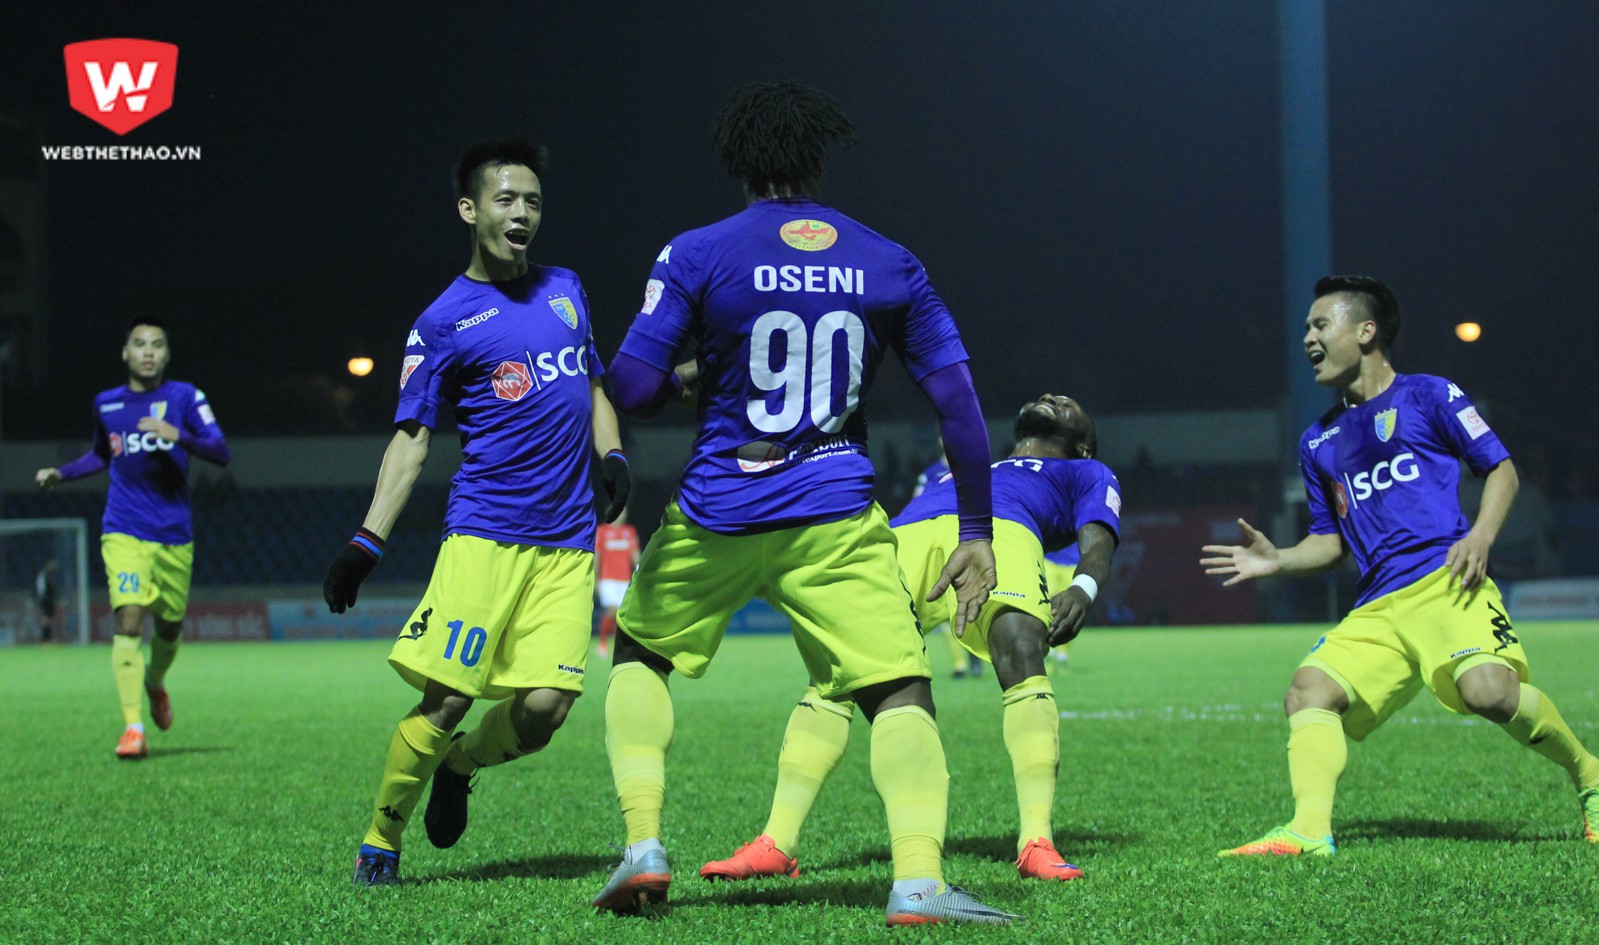 12 phút sau, Oseni hoàn tất cú đúp. Anh và các cầu thủ Hà Nội FC đã bắt đầu cảm thấy ''hơi men'' của chức vô địch V.League 2017. Ảnh: Trung Thu.